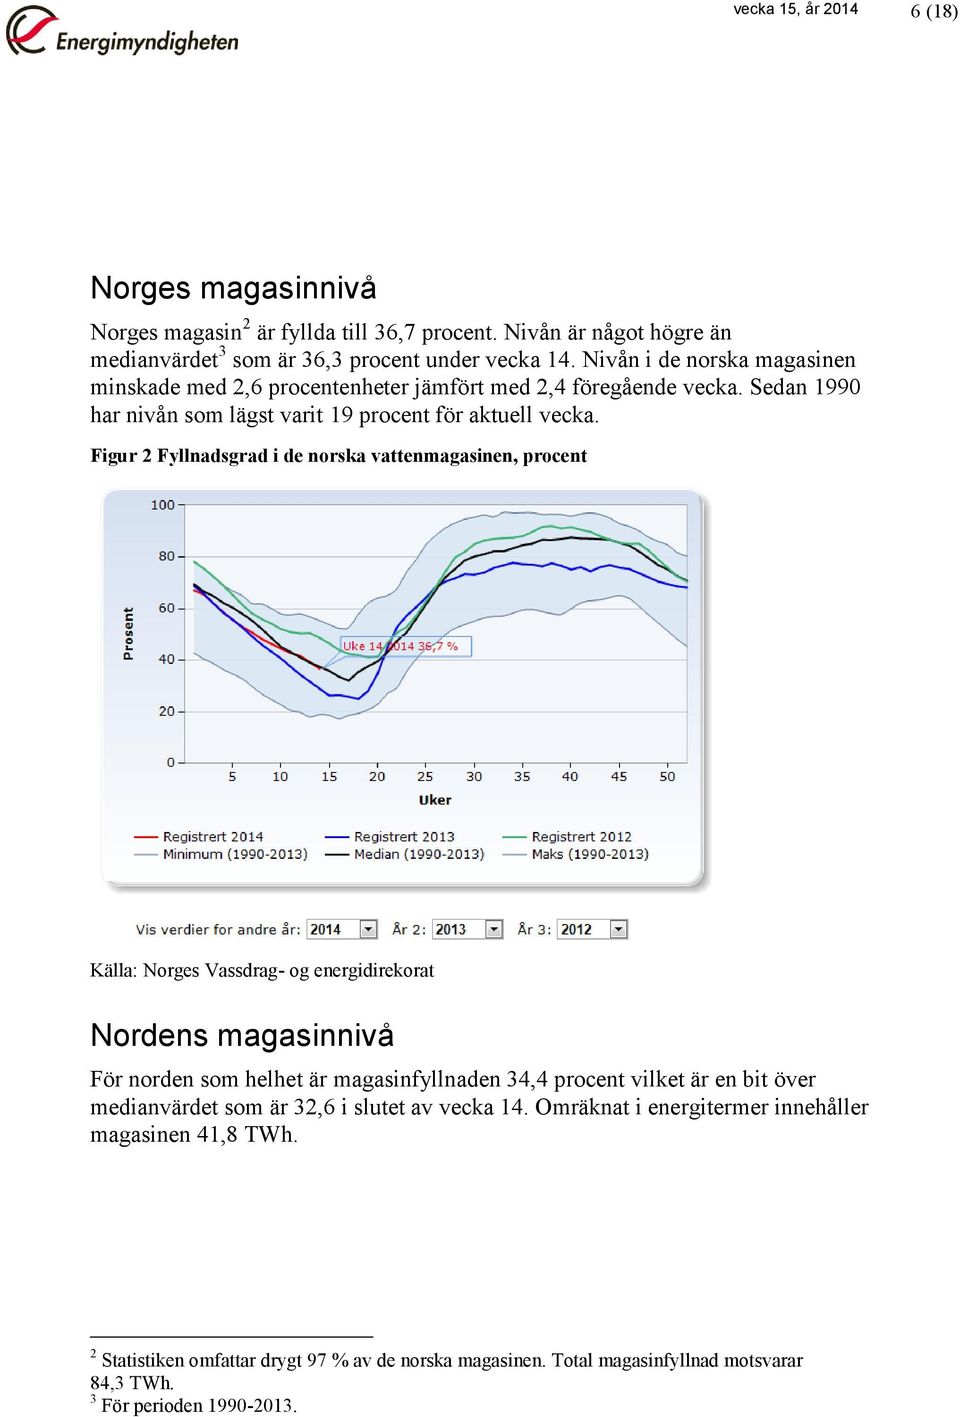 Figur 2 Fyllnadsgrad i de norska vattenmagasinen, procent Källa: Norges Vassdrag- og energidirekorat Nordens magasinnivå För norden som helhet är magasinfyllnaden 34,4 procent vilket är